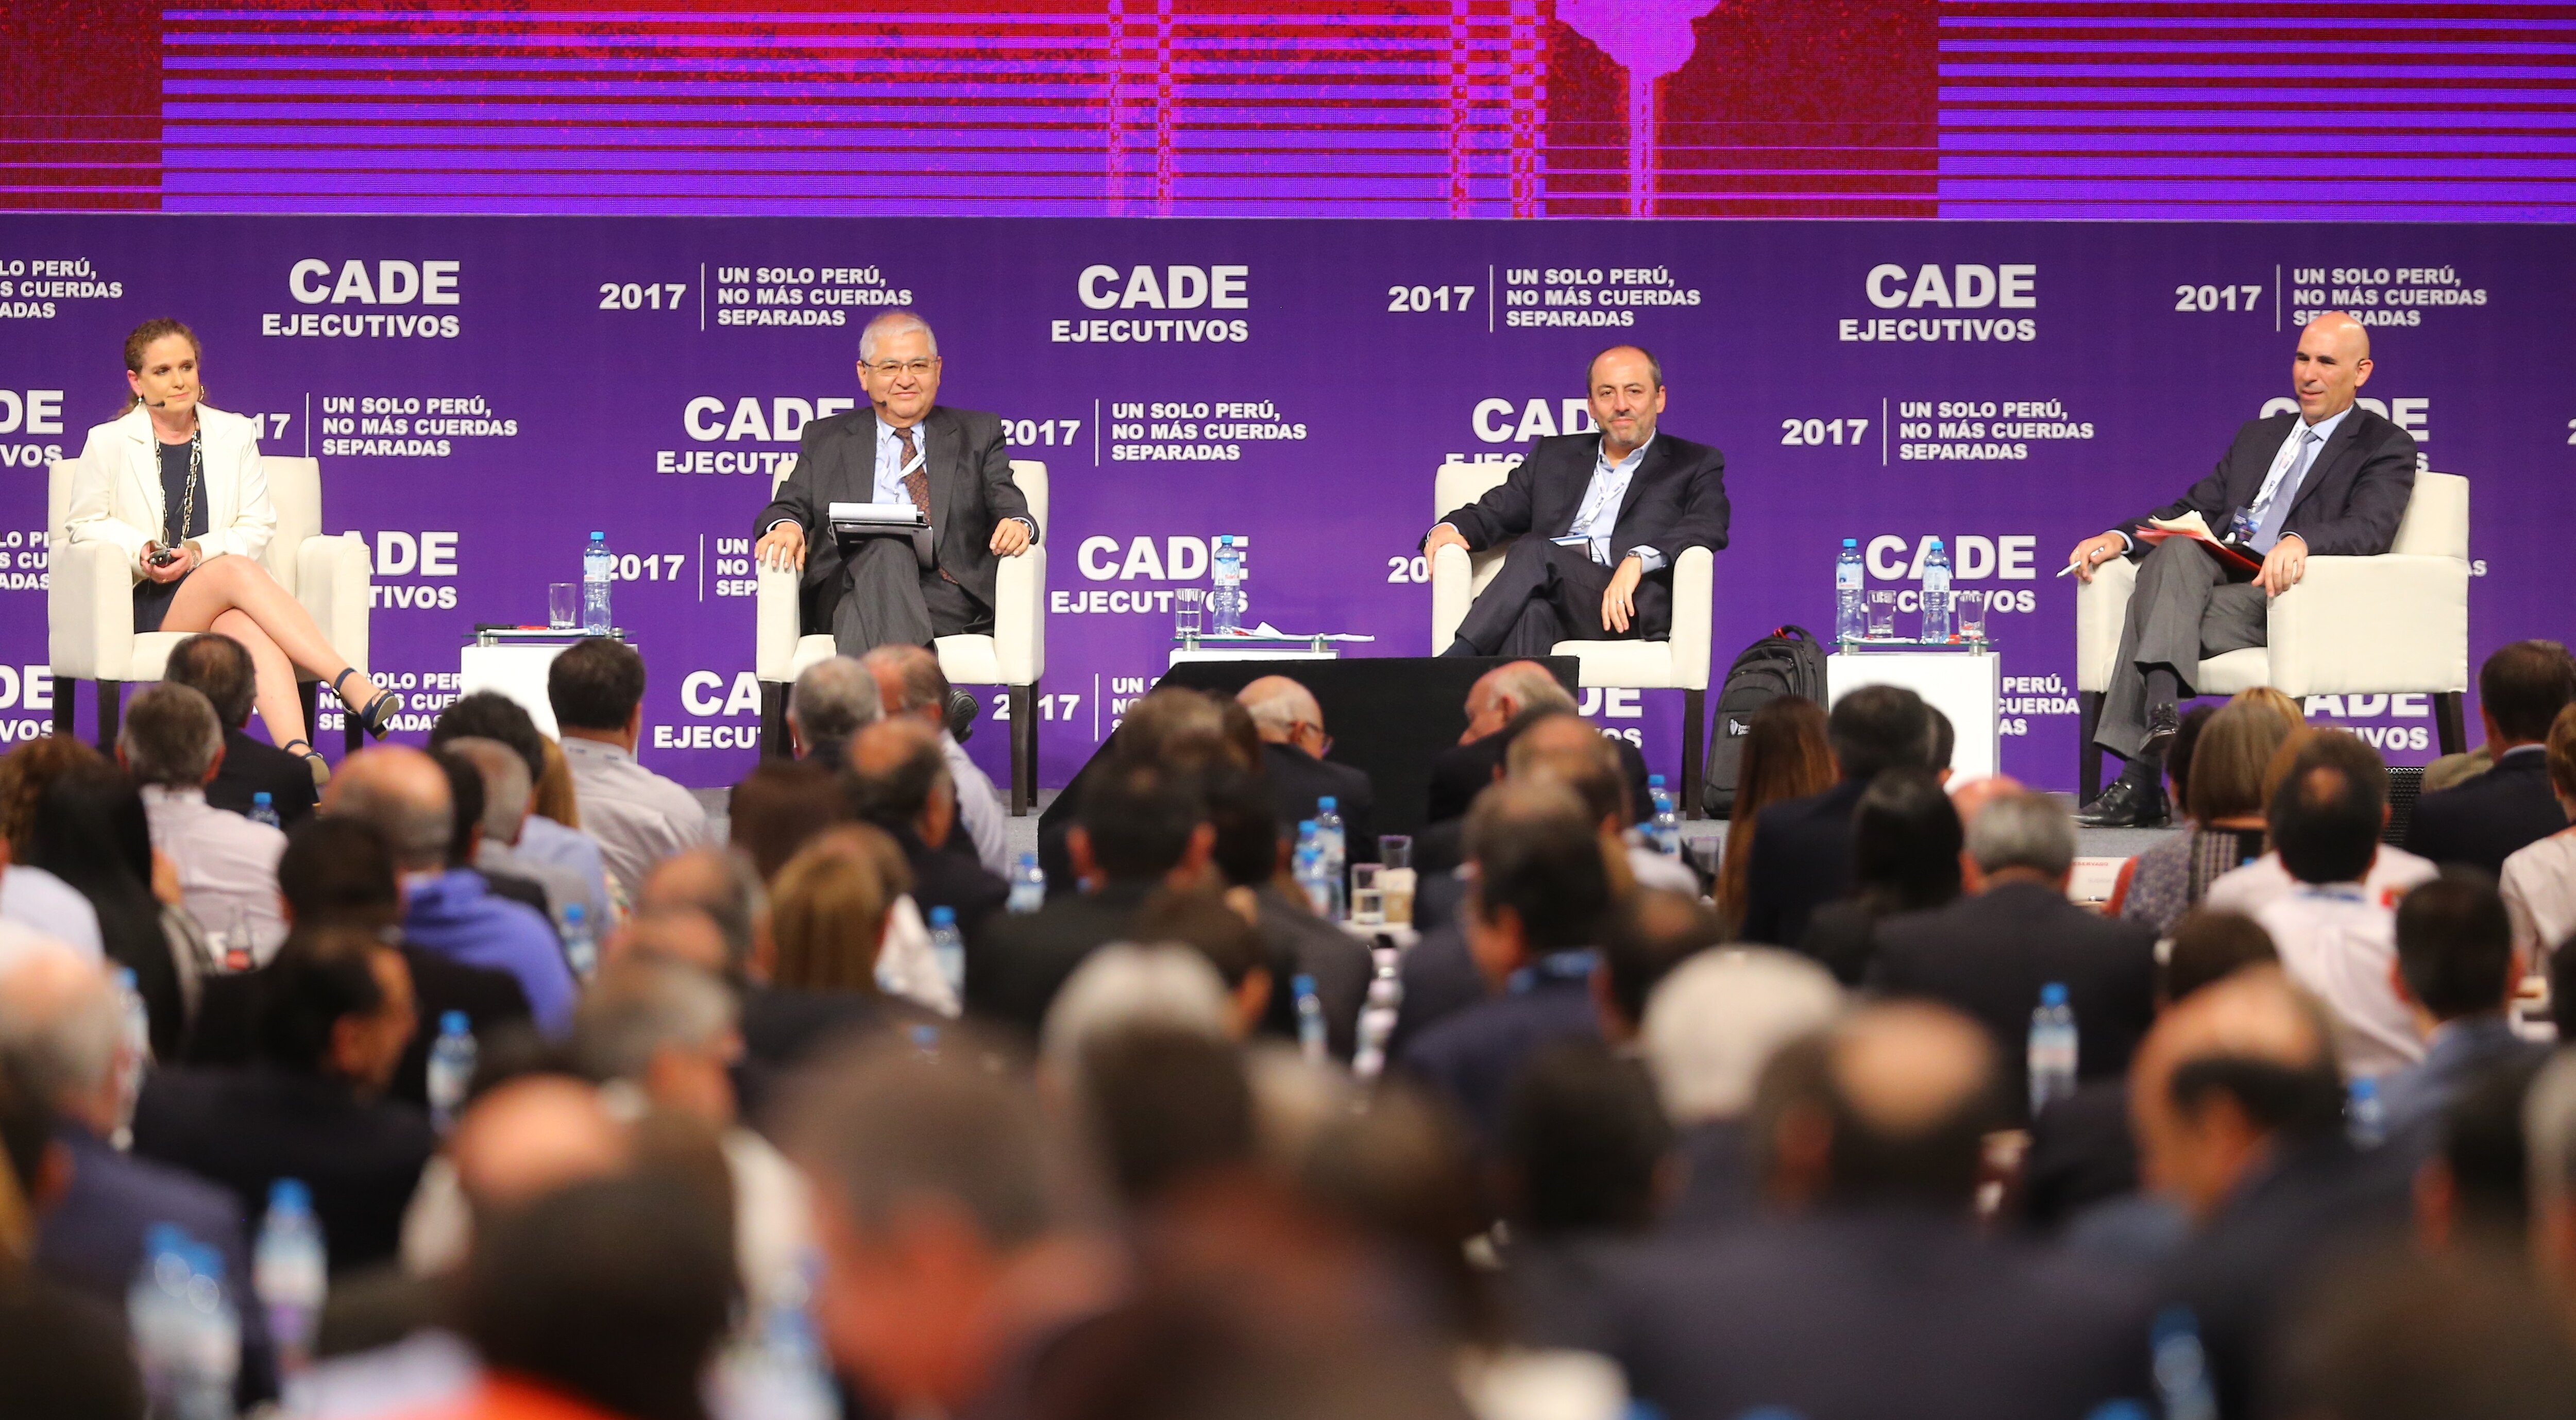 Fotografía del panel “Inversión y competitividad para reforzar el crecimiento” en CADE 2017.